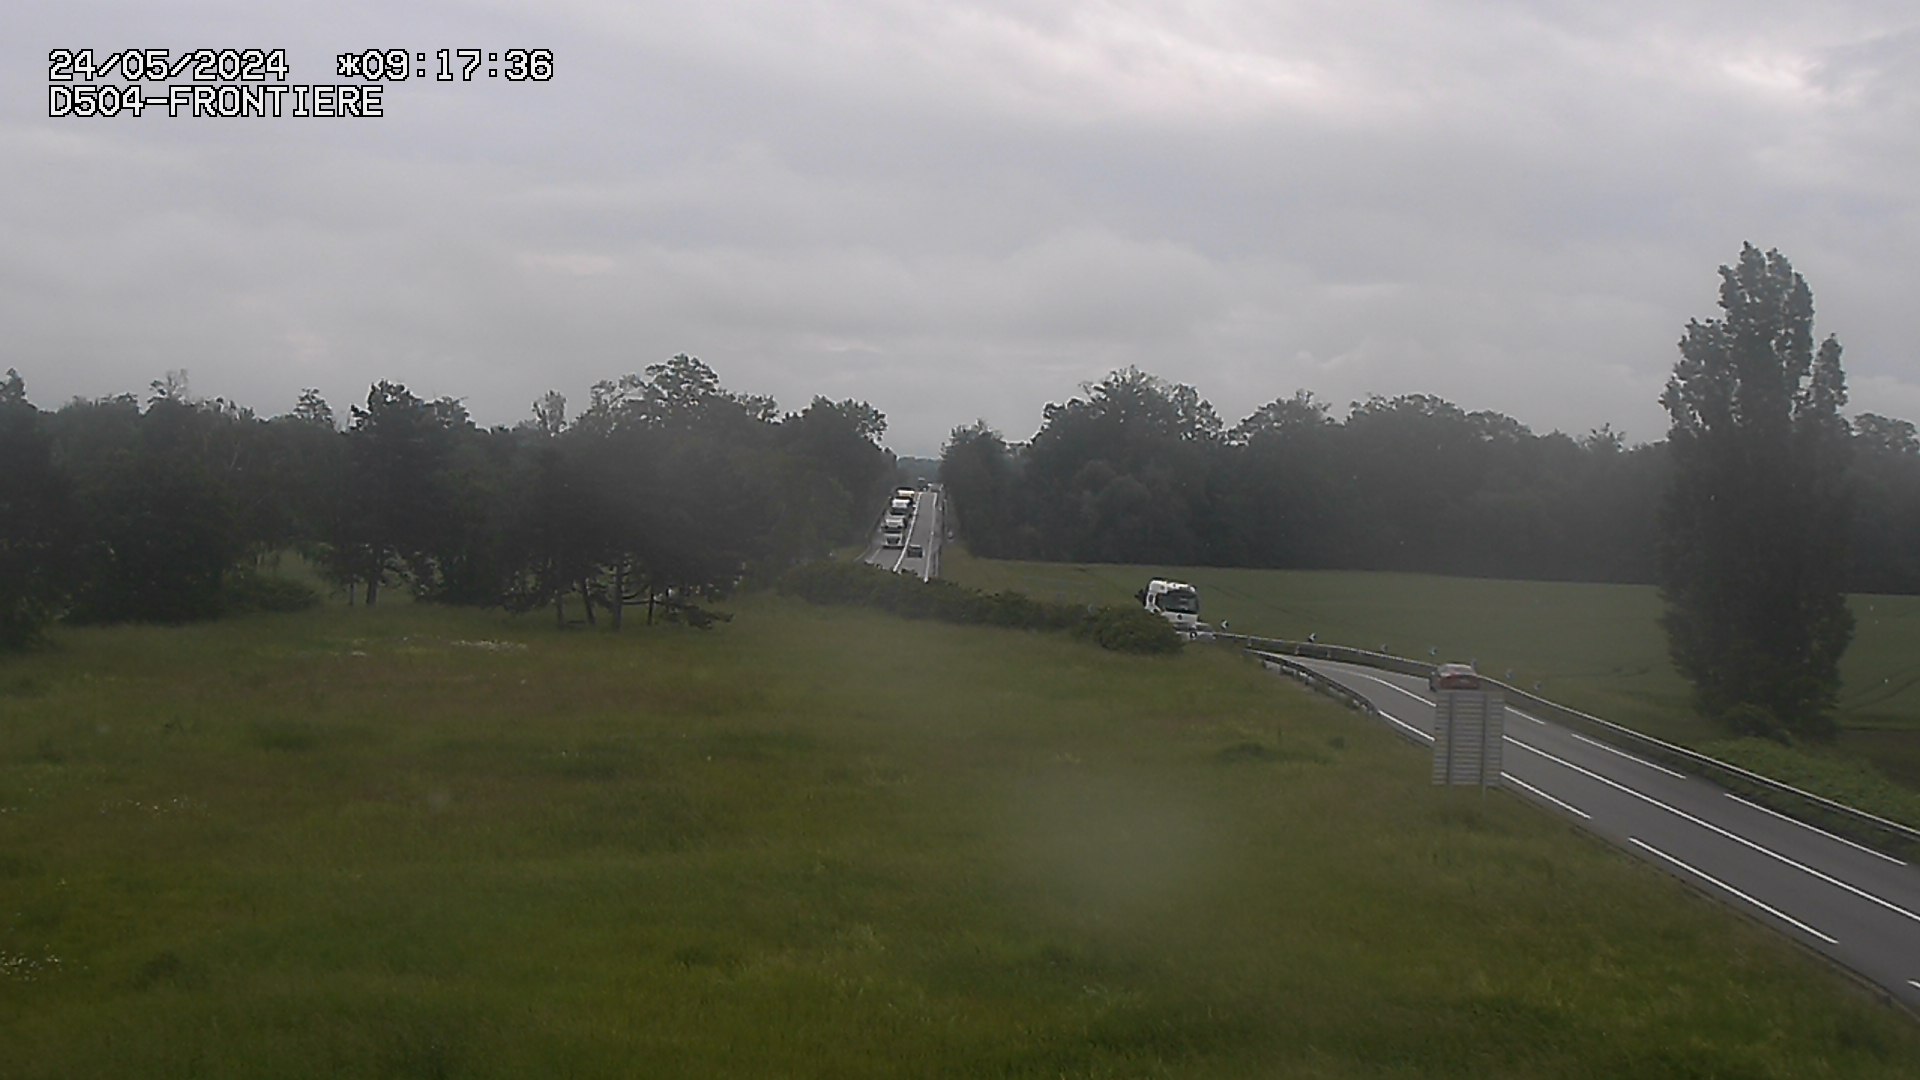 Webcam routière à Roppenheim sur la D4. La voie en sens inverse se dirige vers la frontière allemande